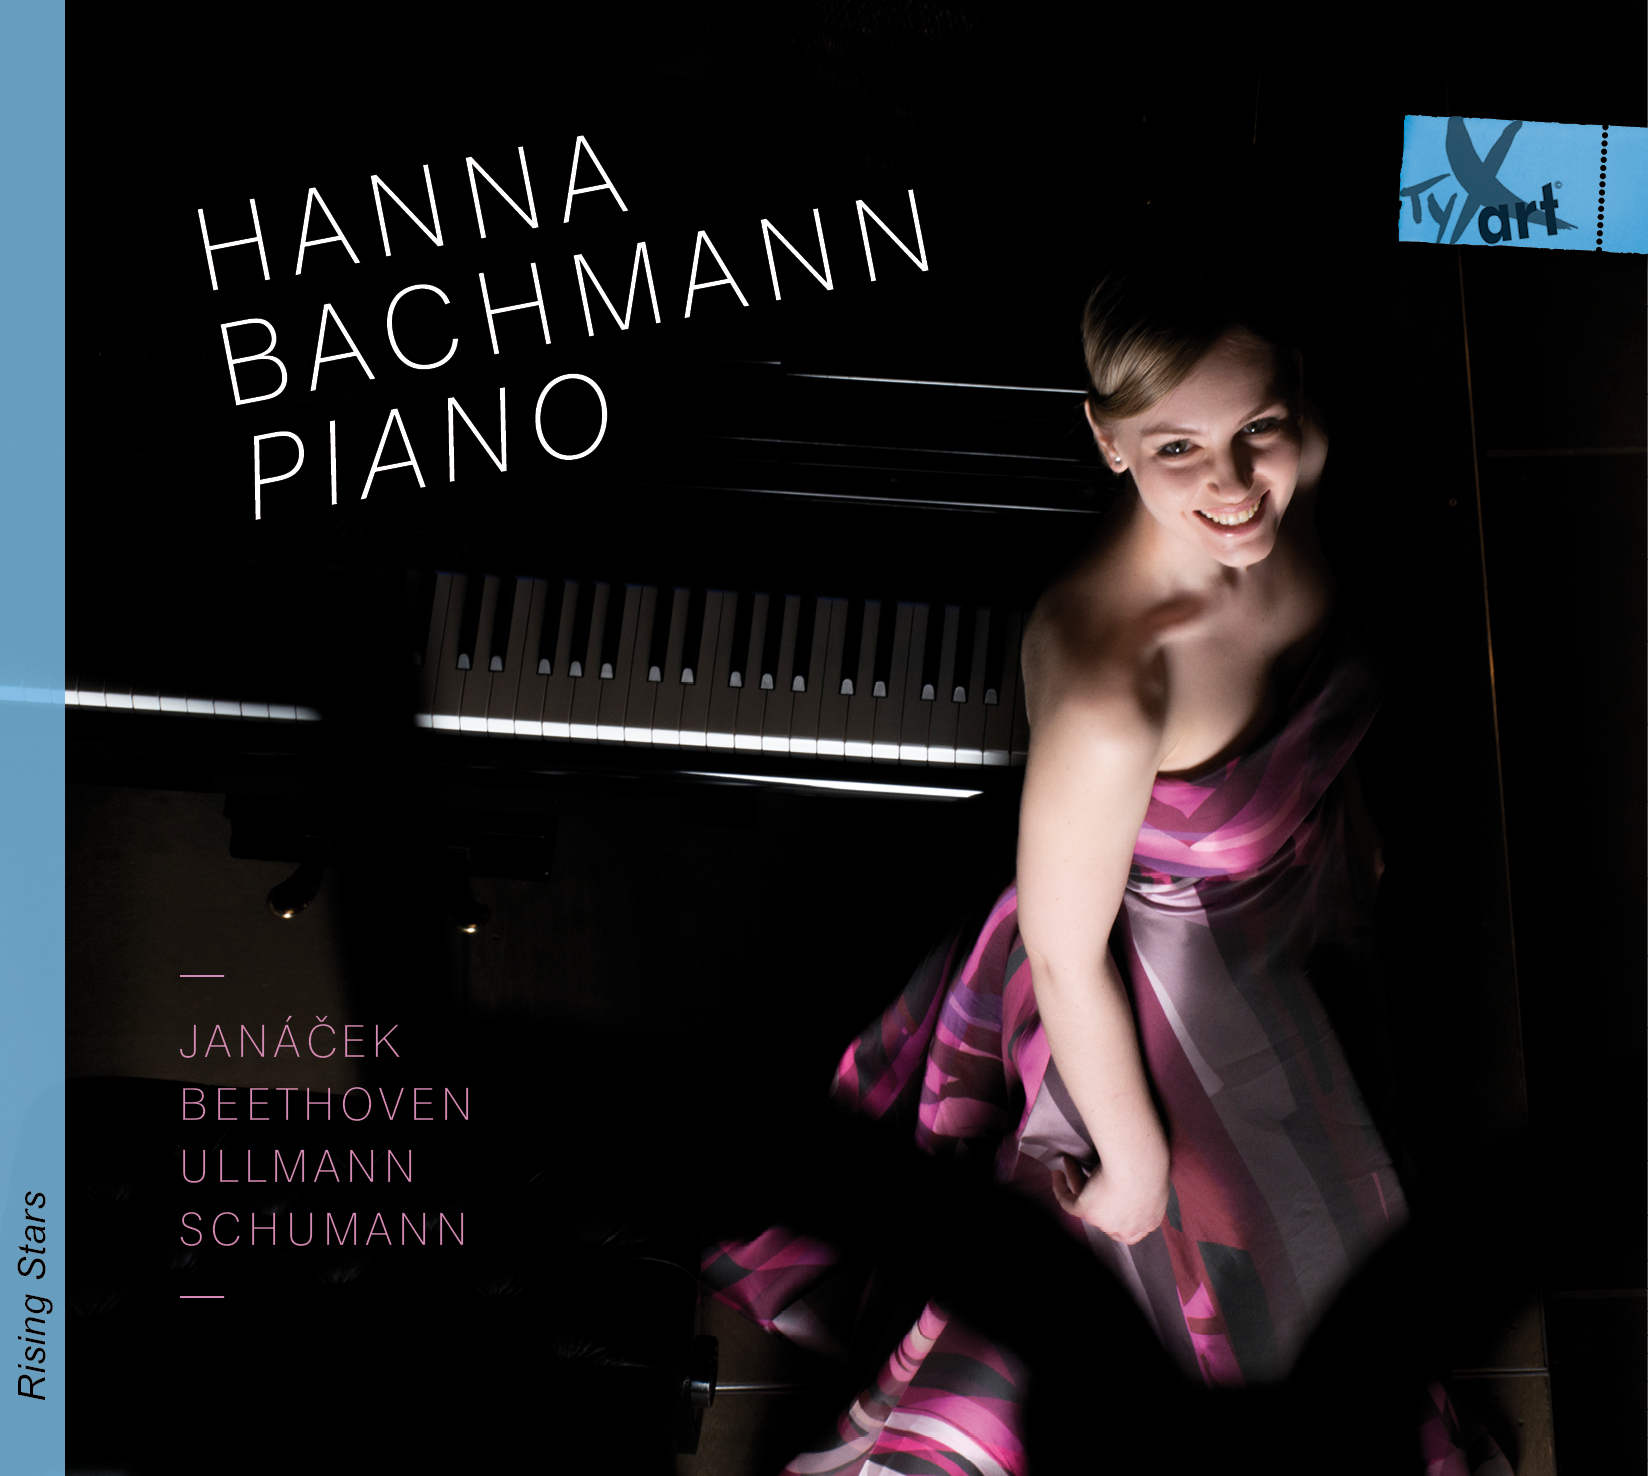 Hanna Bachmann, Piano: Janacek, Beethoven, Ullmann, Schumann